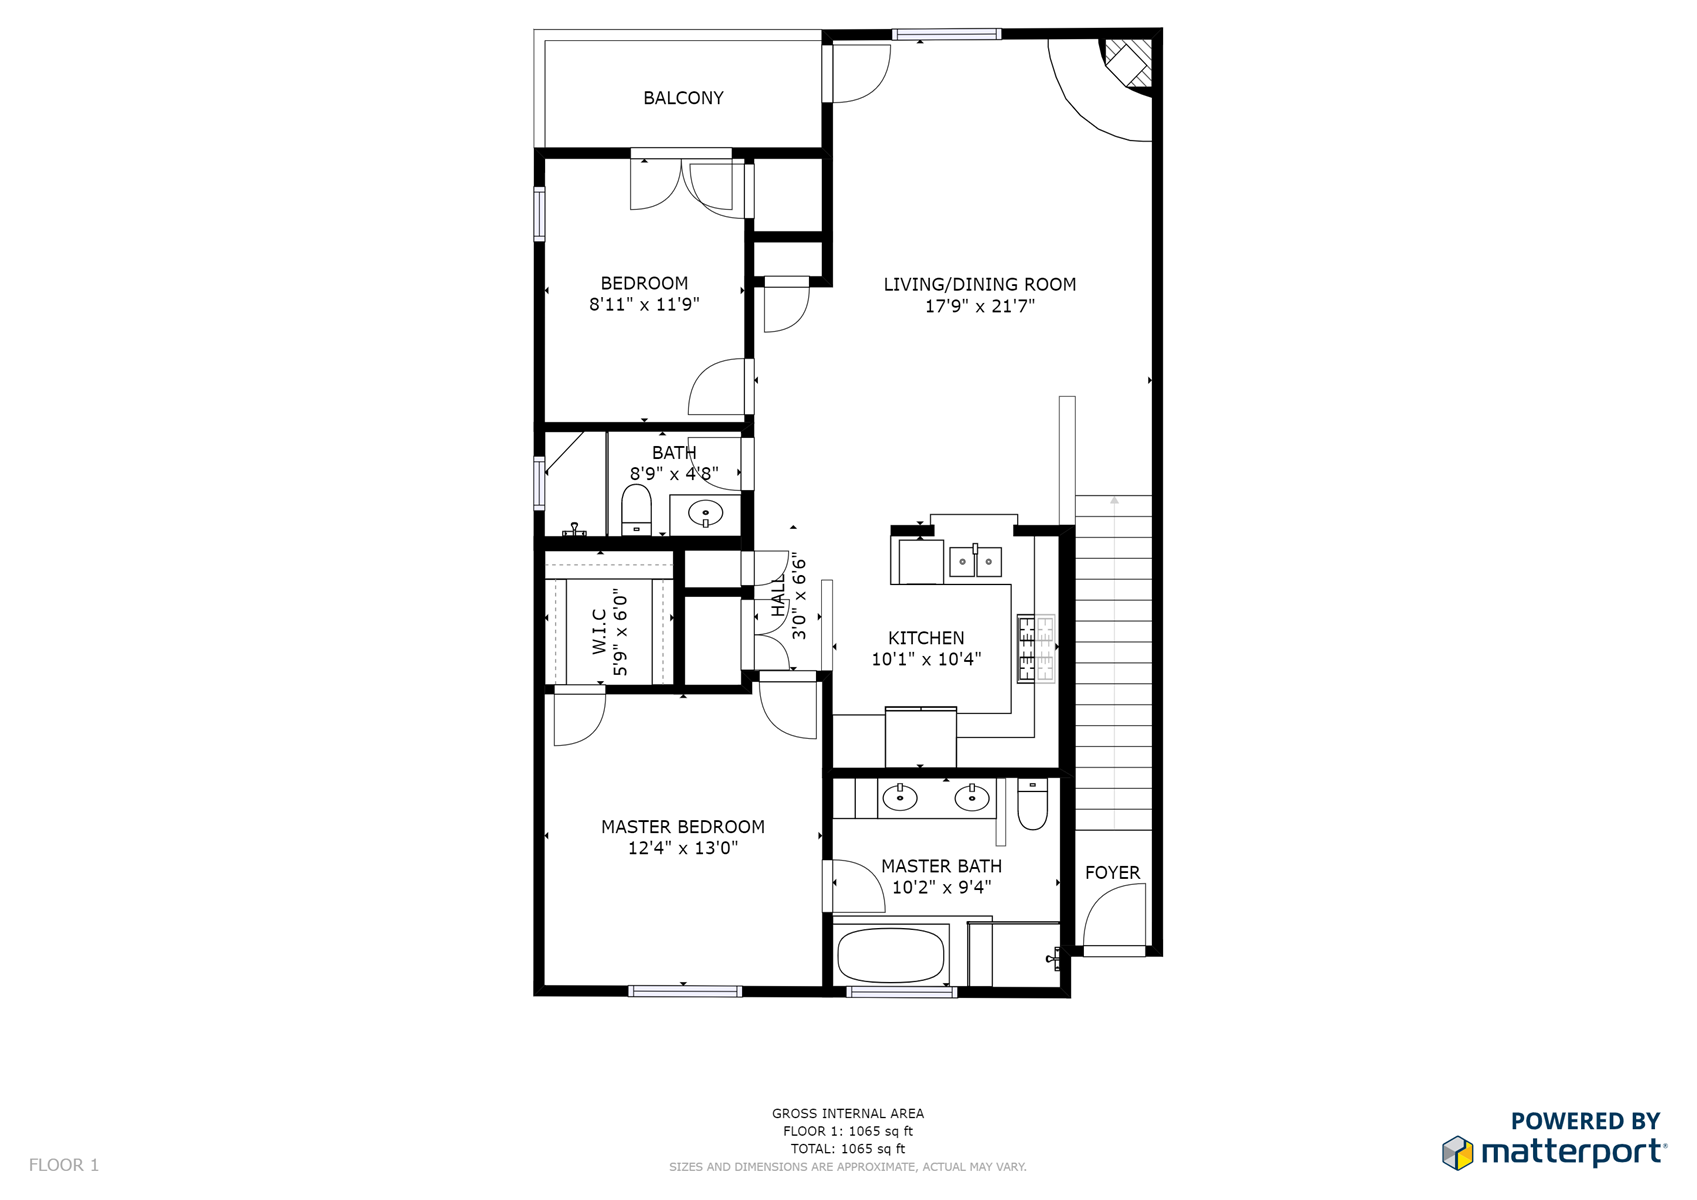 Floor Plan for Corazon Condo Unit 2, 2 Bed / 2 Bath, Luxury Style Condo